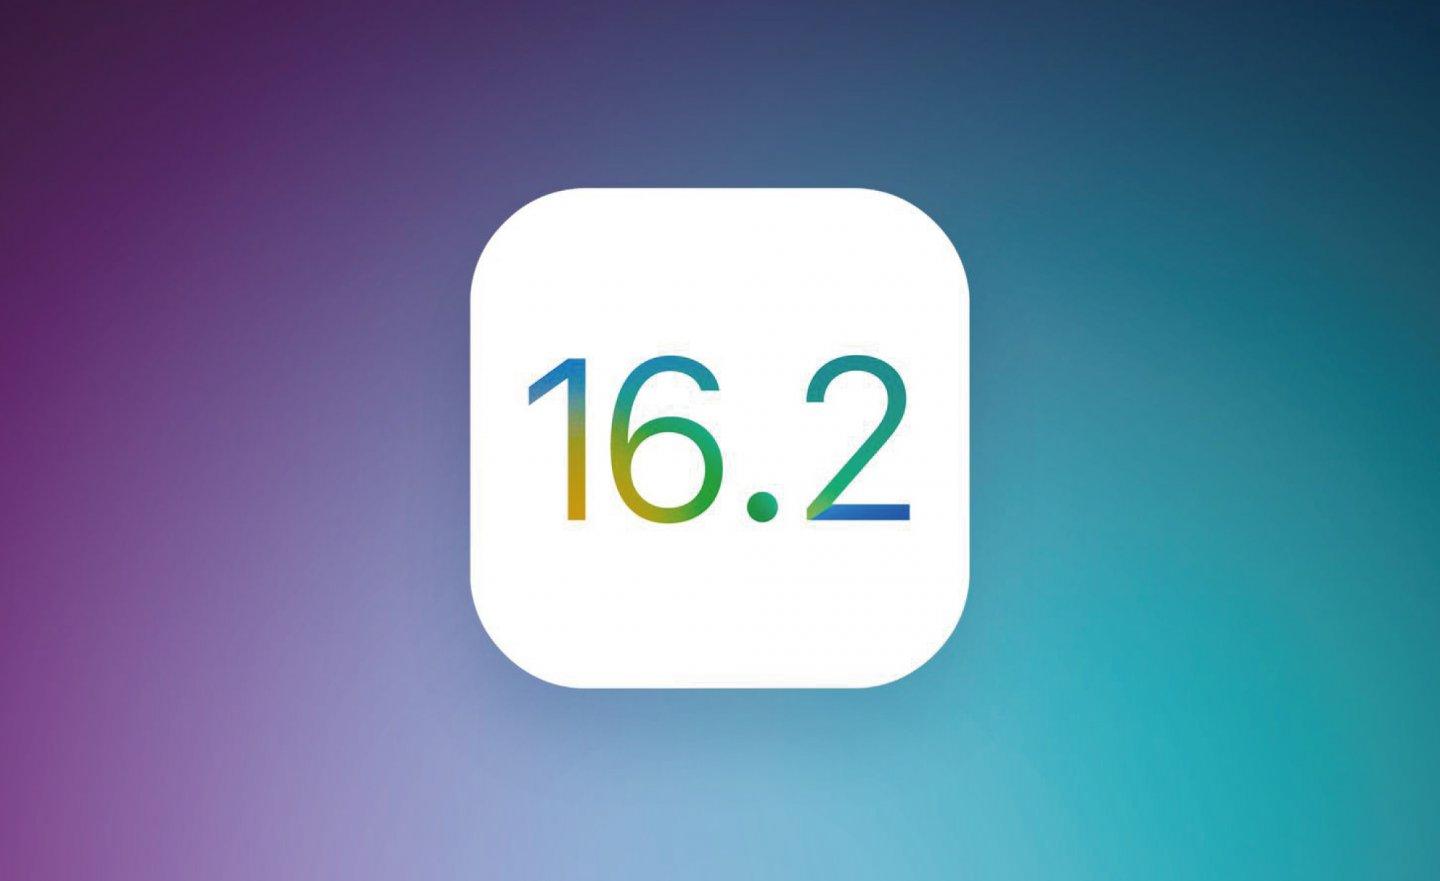 傳出 Apple 蘋果 iOS 16.2/iPadOS 16.2 將於12 月中釋出，iOS 16.3 預計 2023 年春季報到